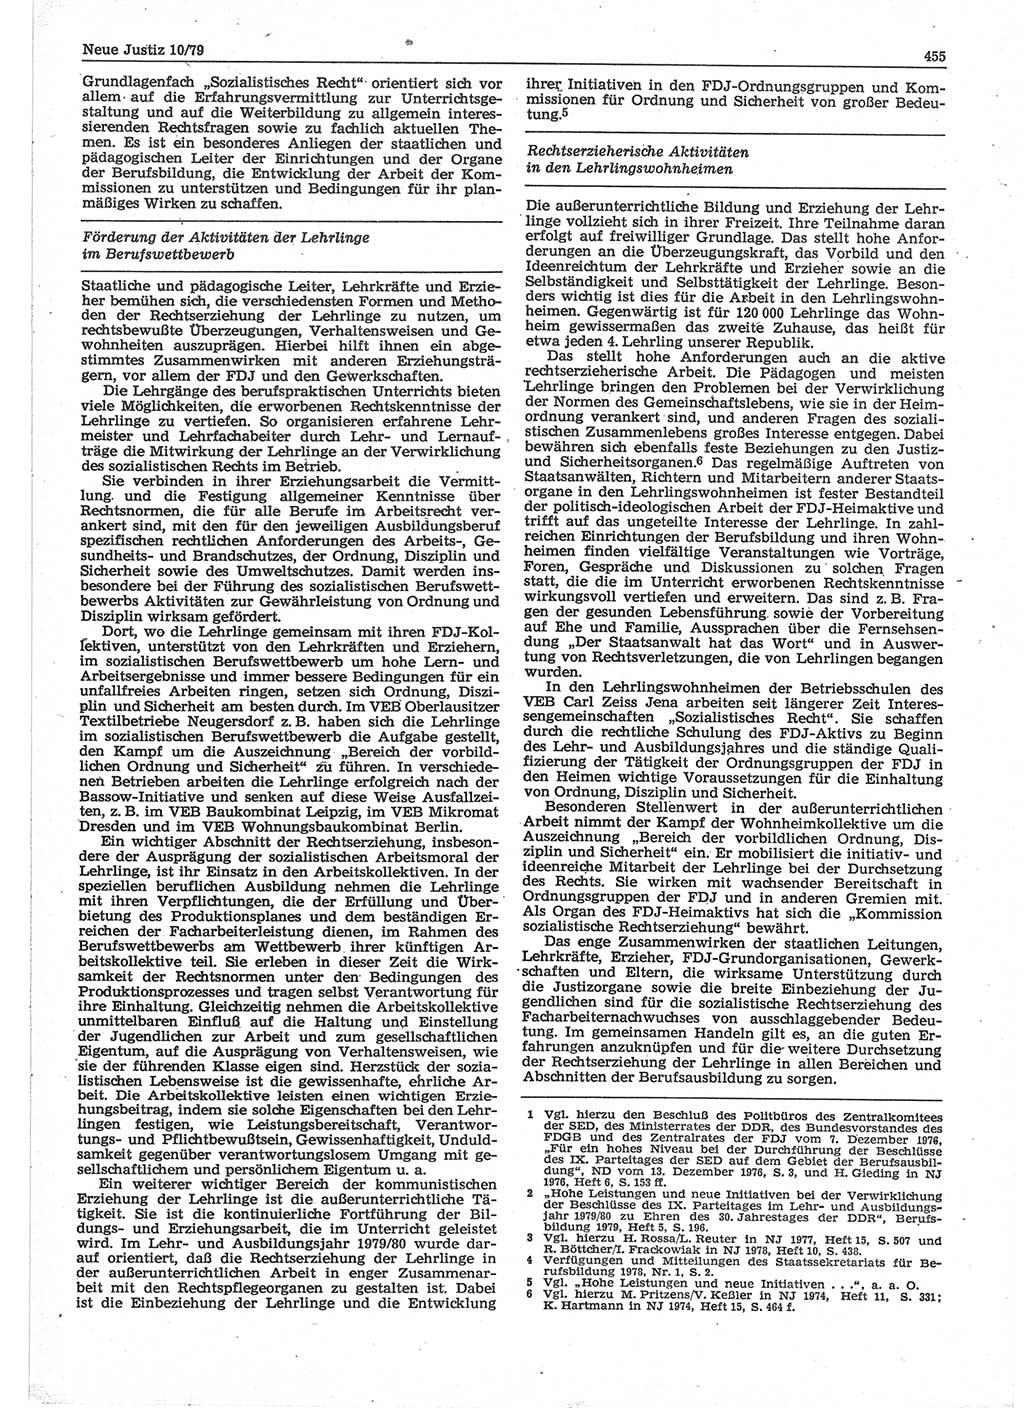 Neue Justiz (NJ), Zeitschrift für sozialistisches Recht und Gesetzlichkeit [Deutsche Demokratische Republik (DDR)], 33. Jahrgang 1979, Seite 455 (NJ DDR 1979, S. 455)